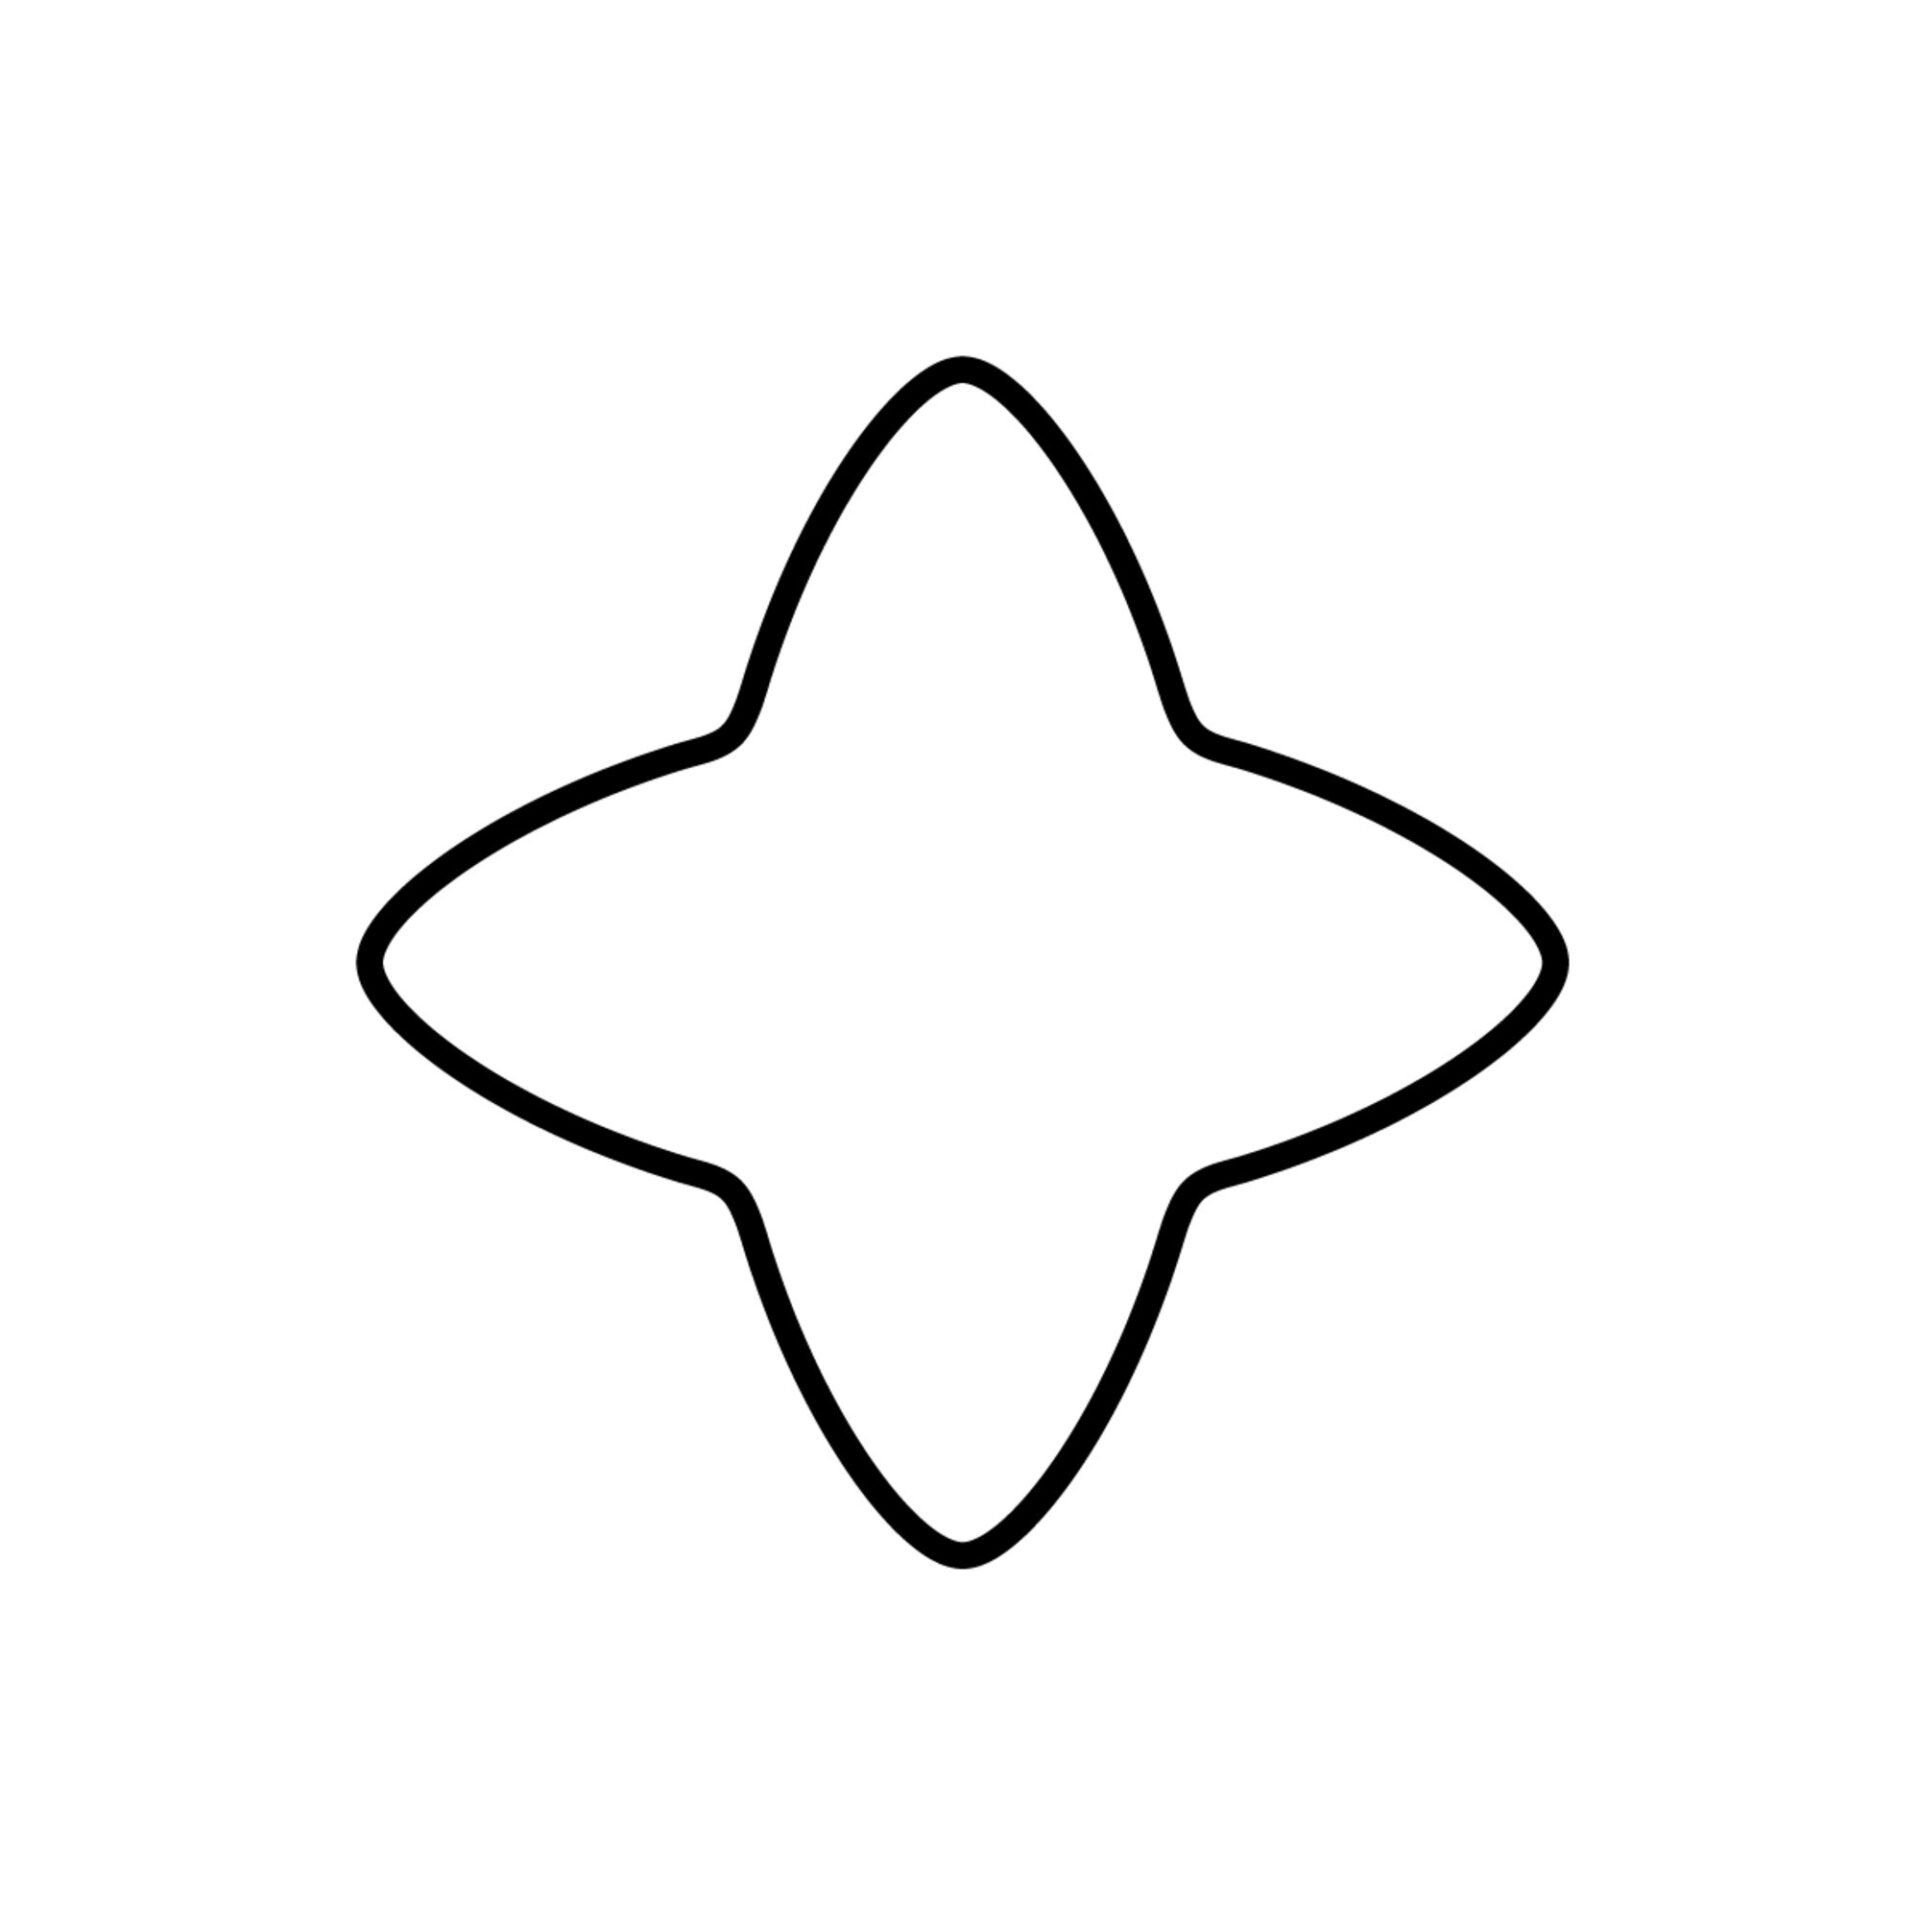 Kaiser Формочка для печенья звезда 4-х лучевая металлическая 6 см | https://grandposuda.com.ua